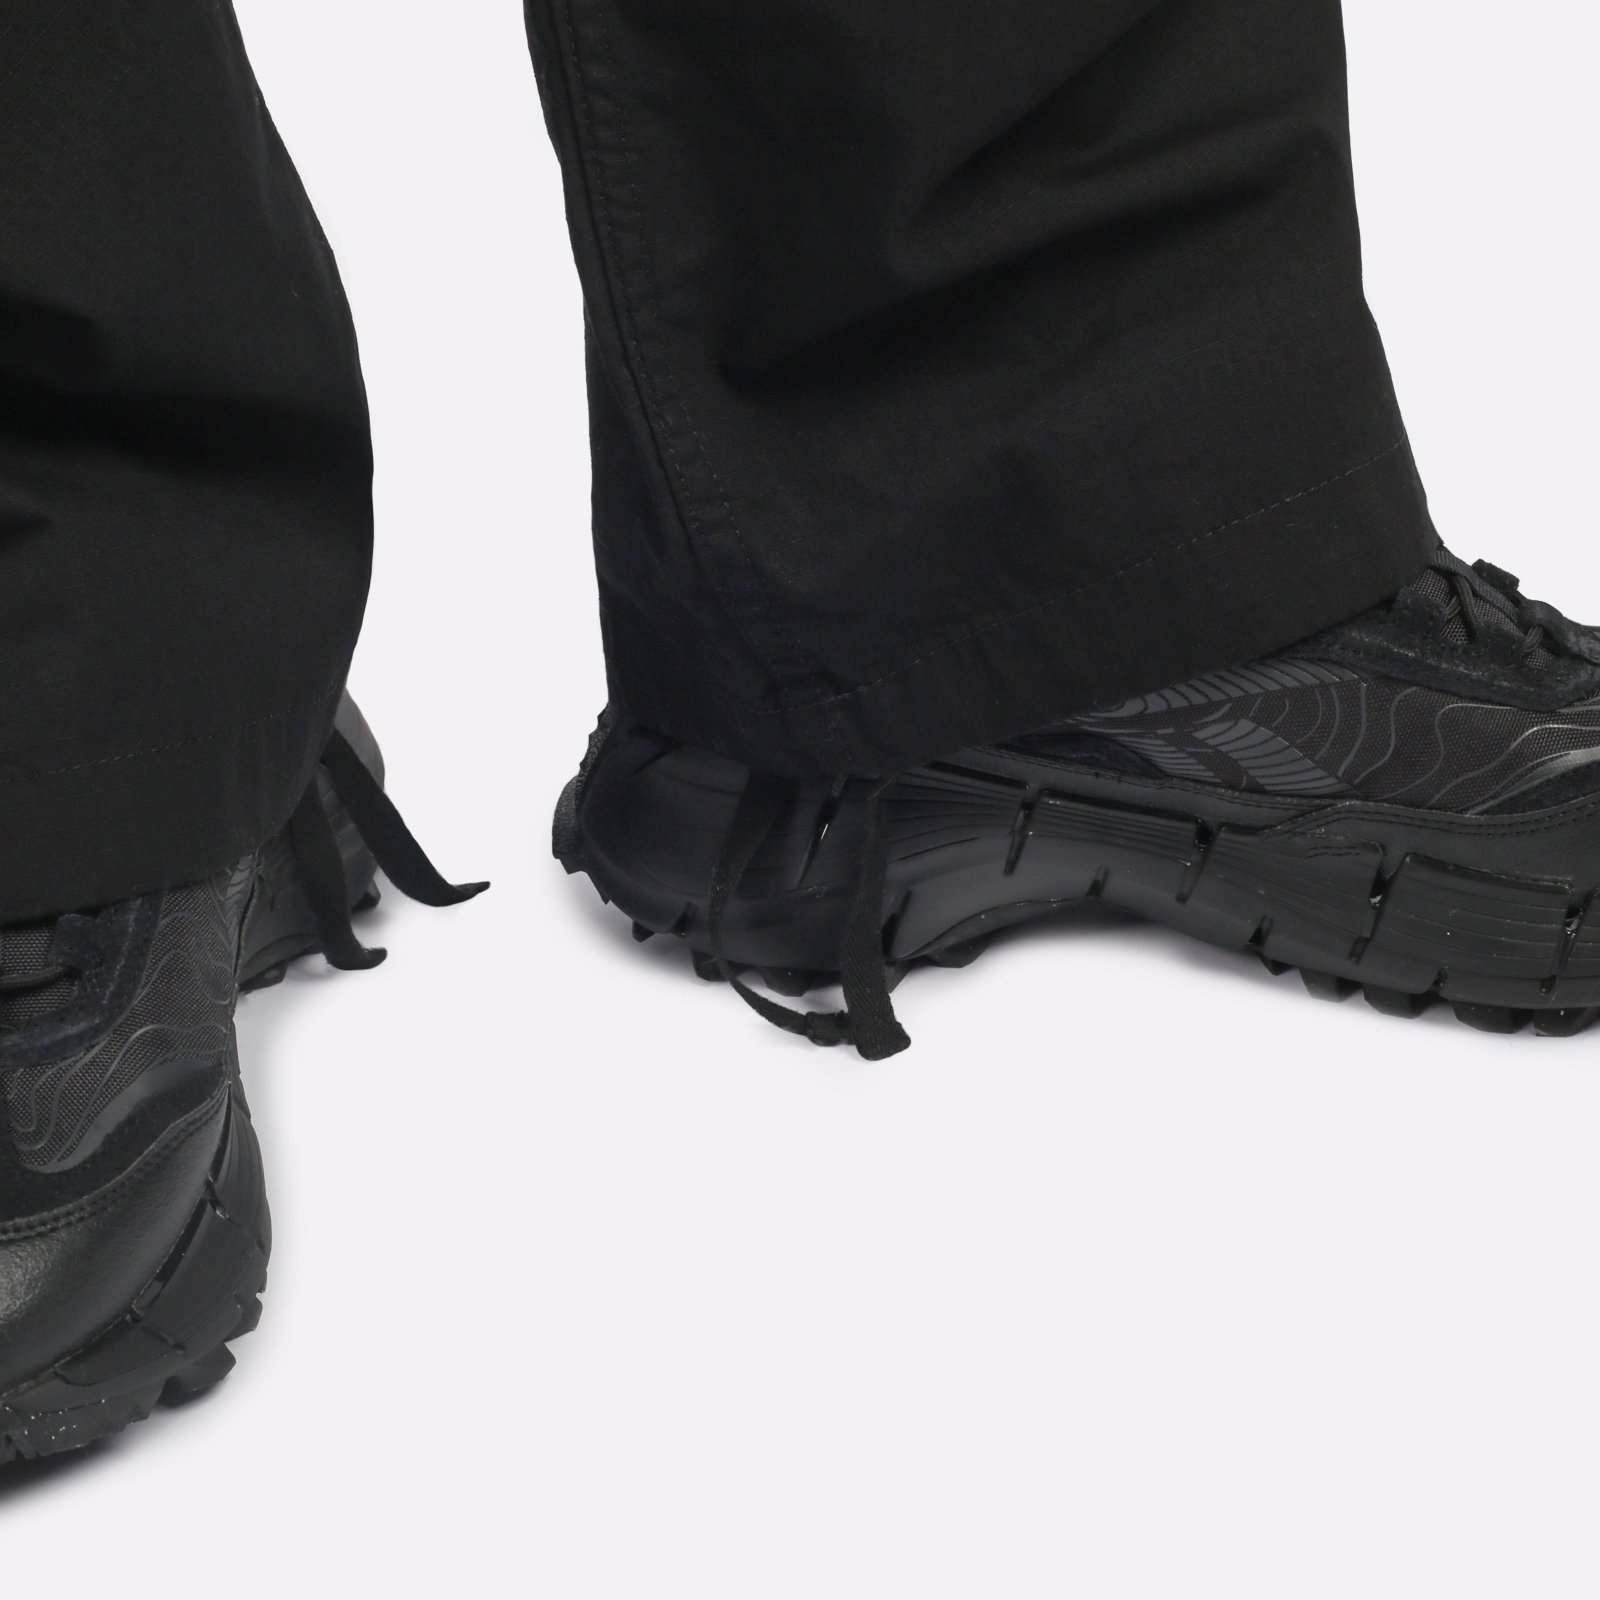 мужские брюки Carhartt WIP Jet Cargo Pant  (I032967-black)  - цена, описание, фото 5